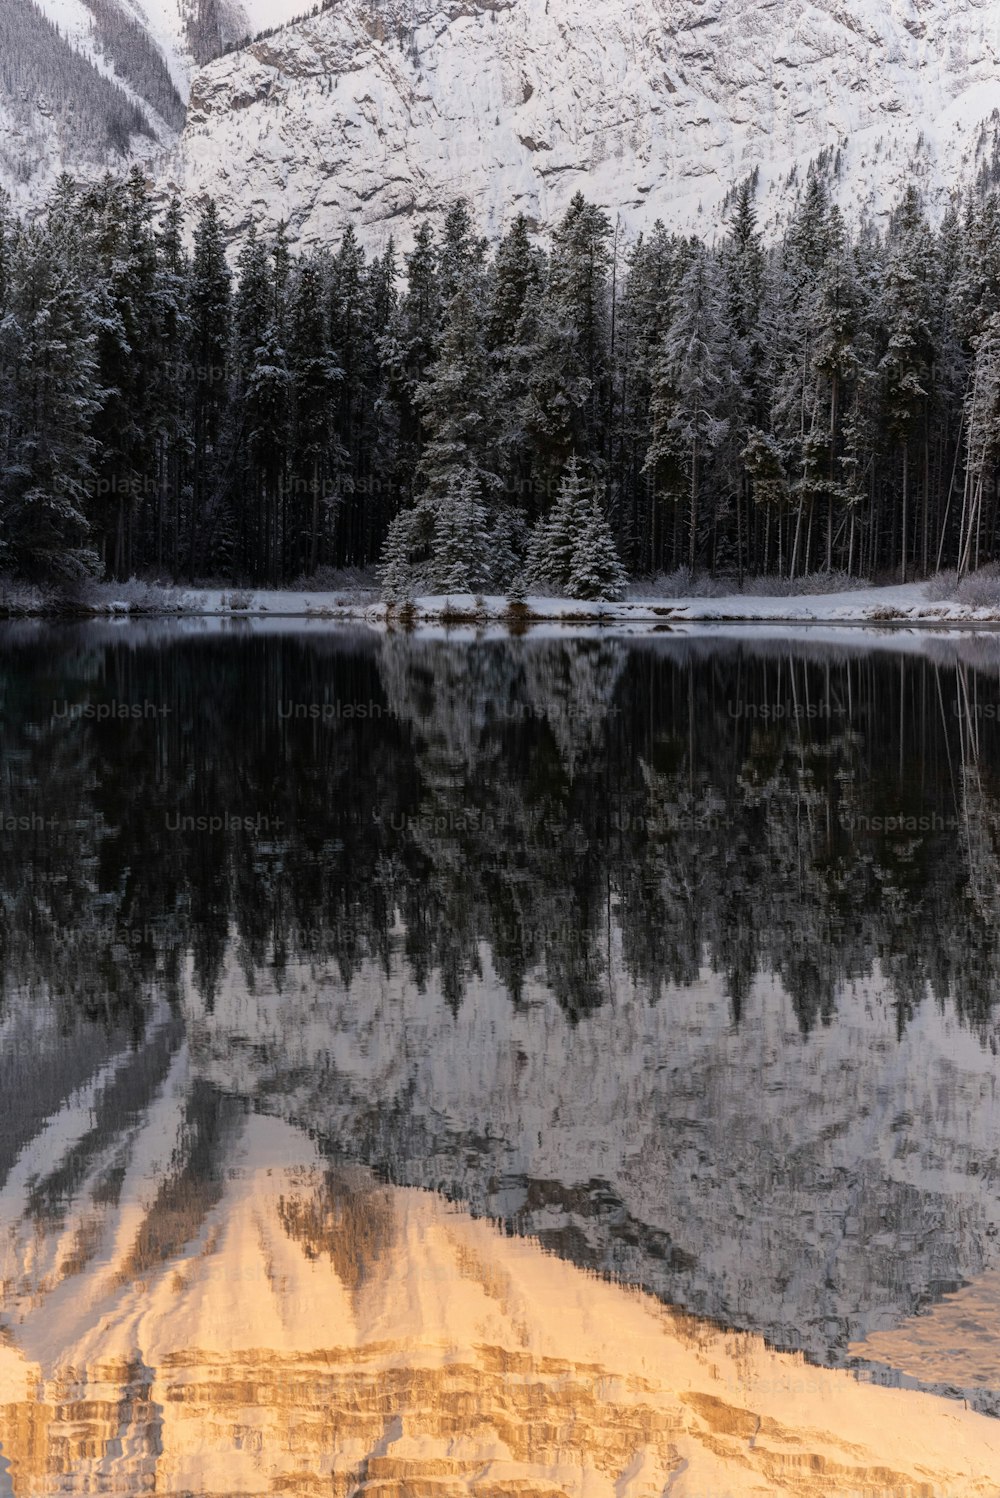 Ein See umgeben von Schnee und Bäumen